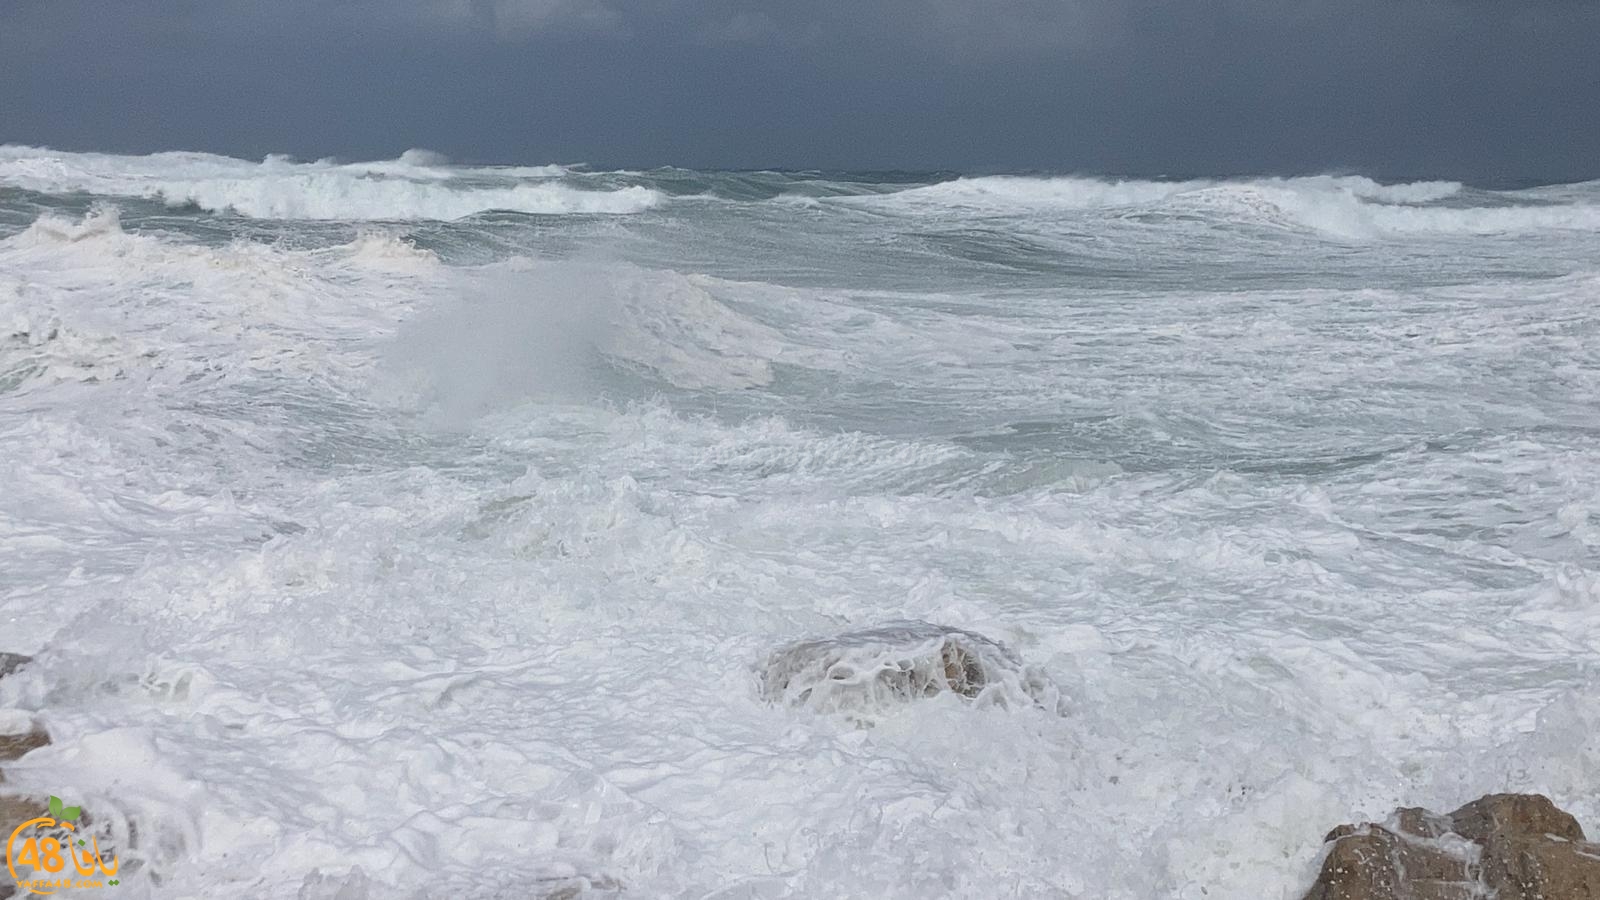   شاهد: بحر يافا الهائج مع استمرار تأثير المنخفض الجوّي 